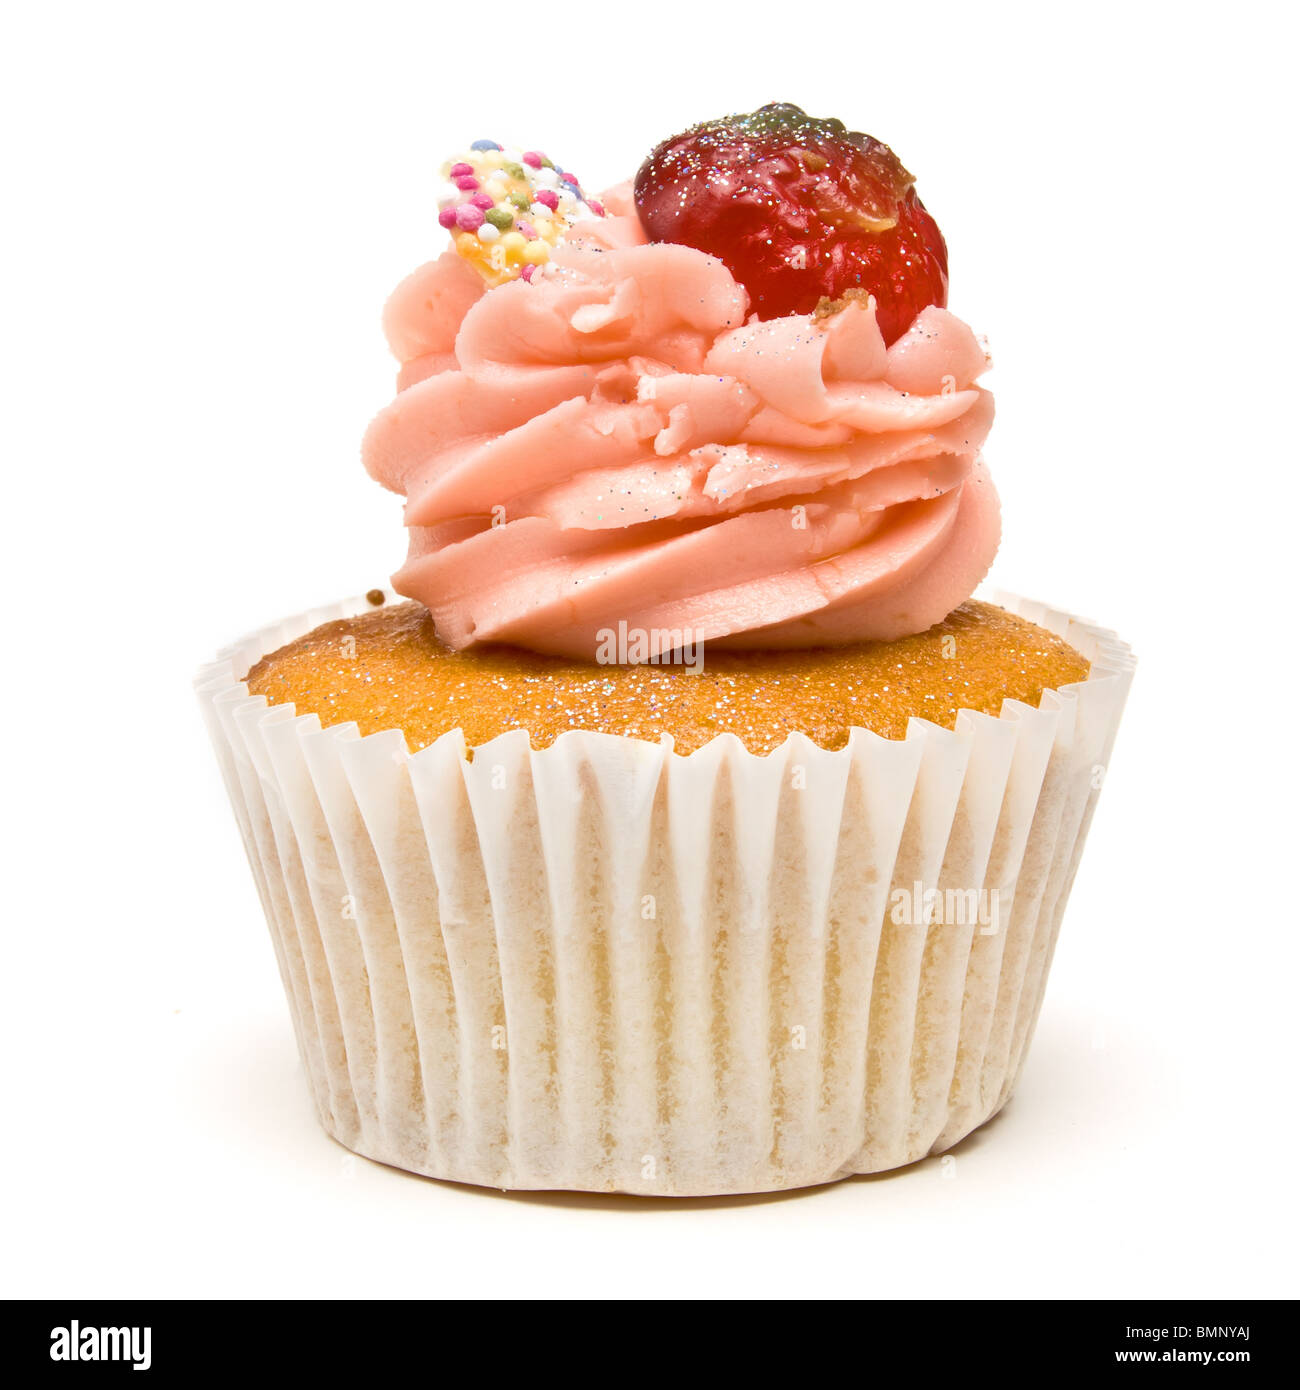 Lusso tazza di fragole torta dal basso prospettica isolata contro uno sfondo bianco. Foto Stock